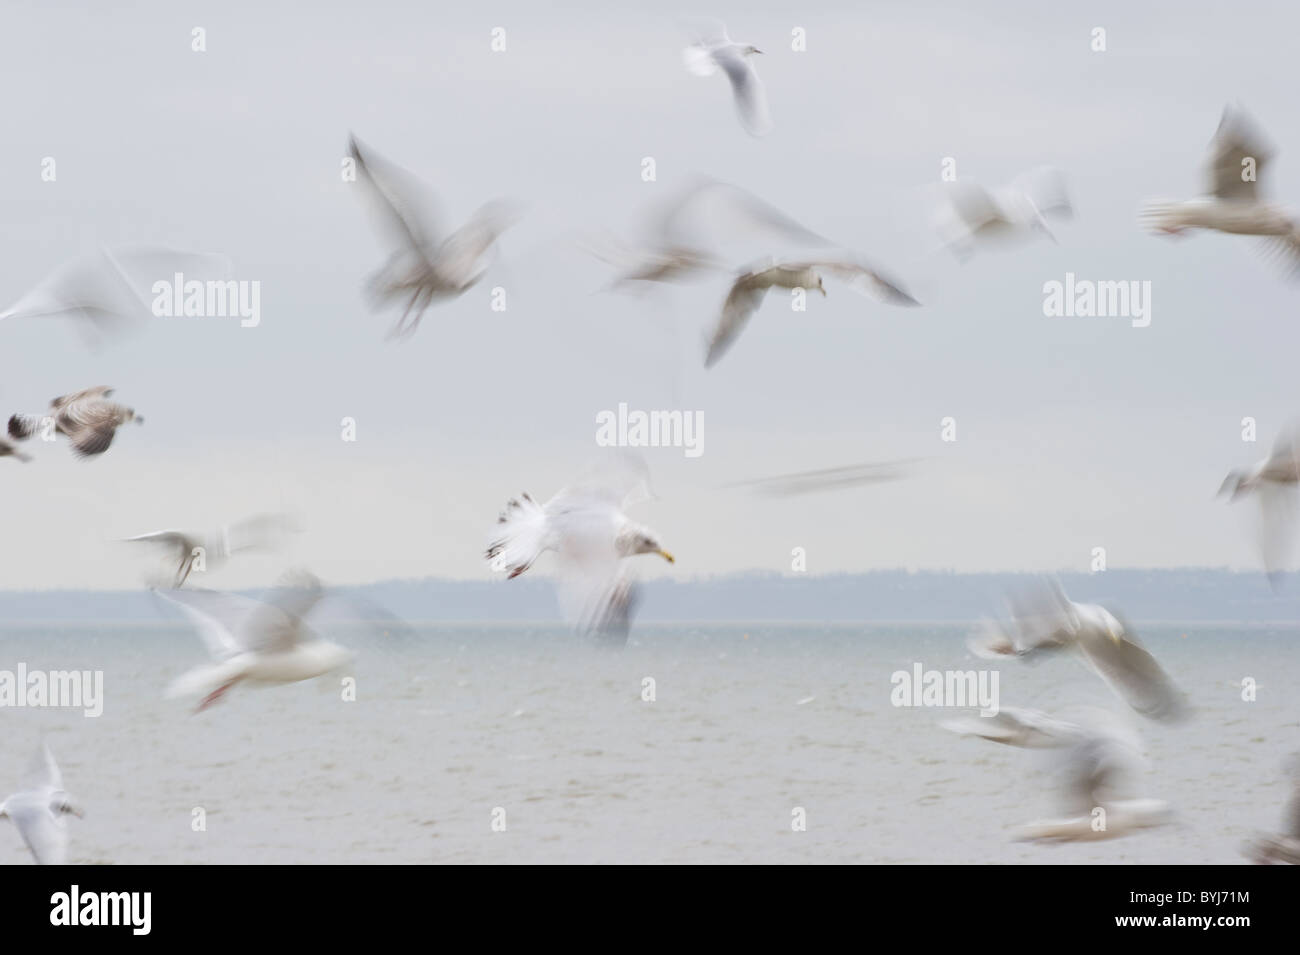 Gabbiani offshore volanti fotografati a rallentare la velocità dello shutter per mostrare il movimento. Foto Stock